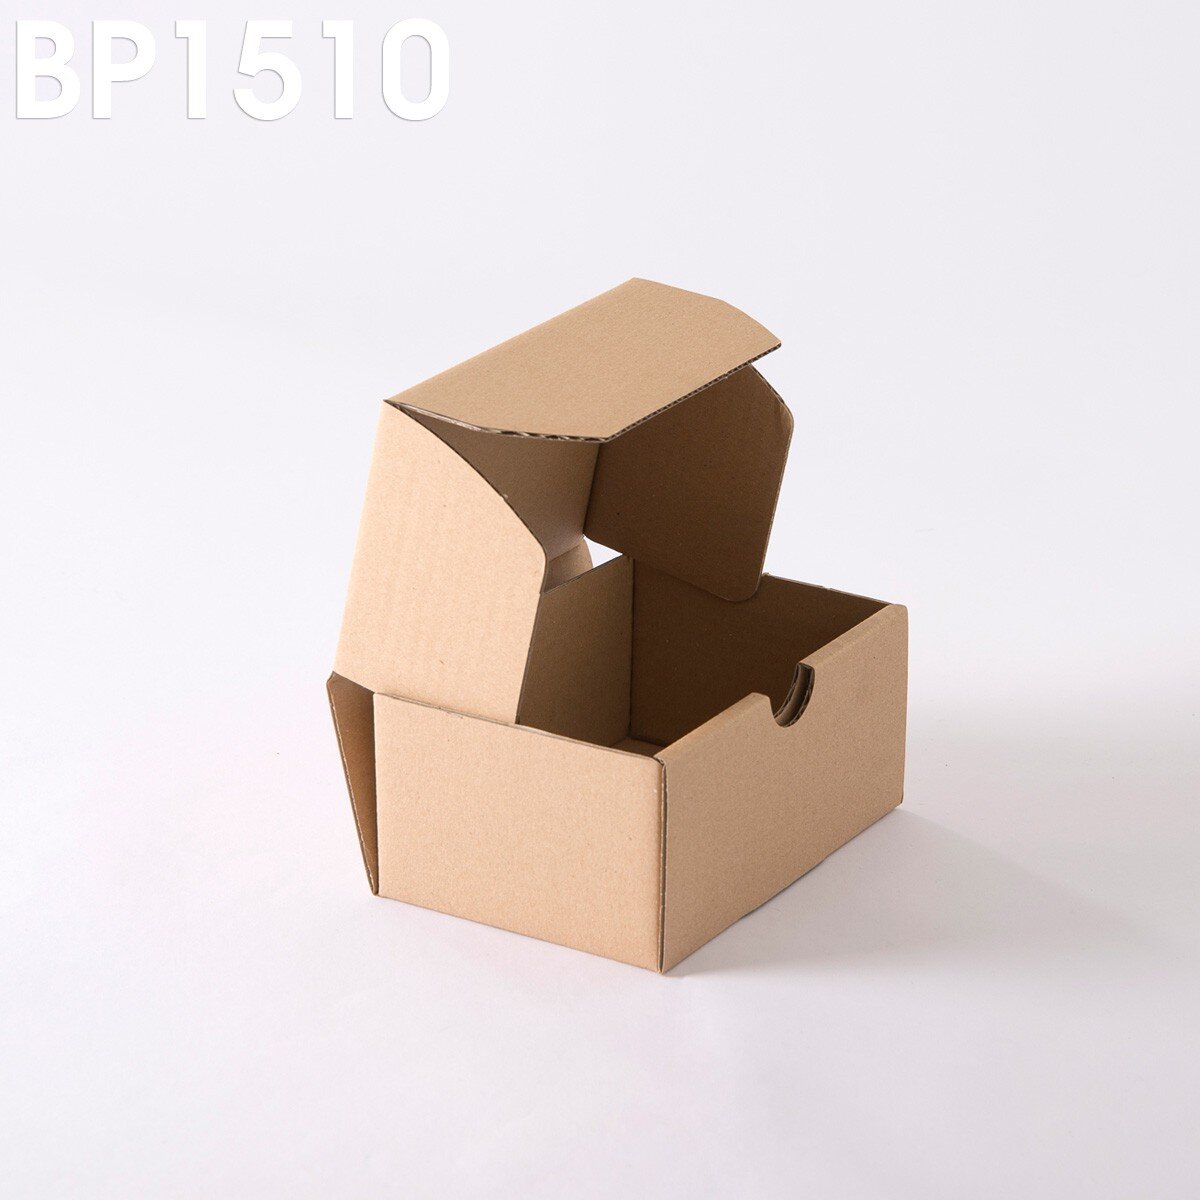 Tech-Pac - Lot de 5-280 mm x 185 mm x 65 mm - Carton d'emballage kraft -  Royal Mail Small Colis Posting - Expédition postale - Marron